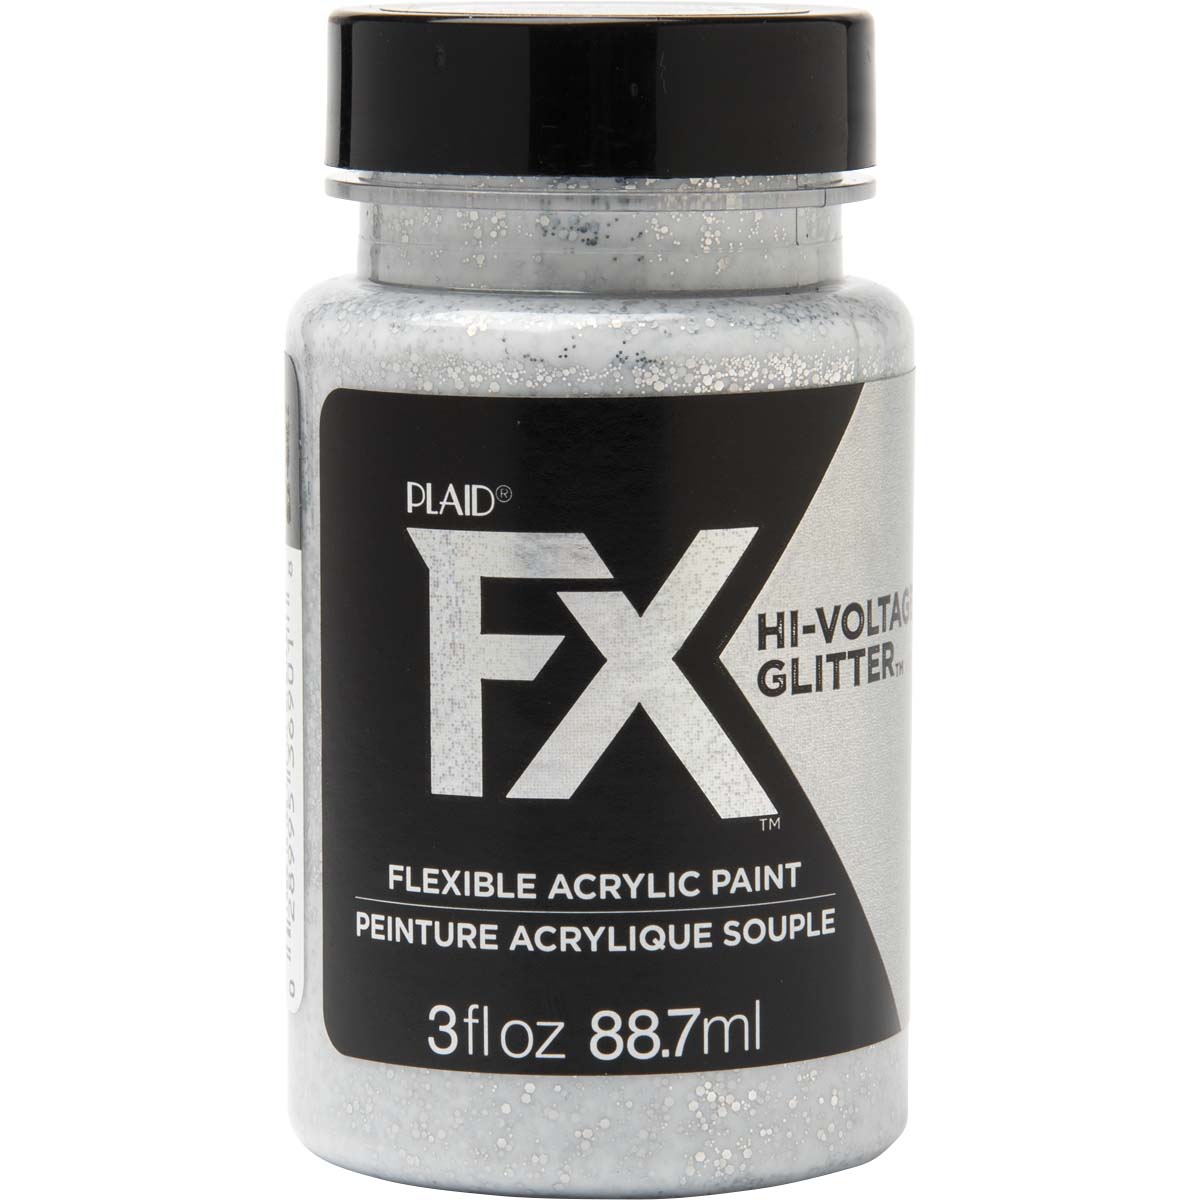 PlaidFX Hi-Voltage Glitter Flexible Acrylic Paint - Silver, 3 oz. - 36901